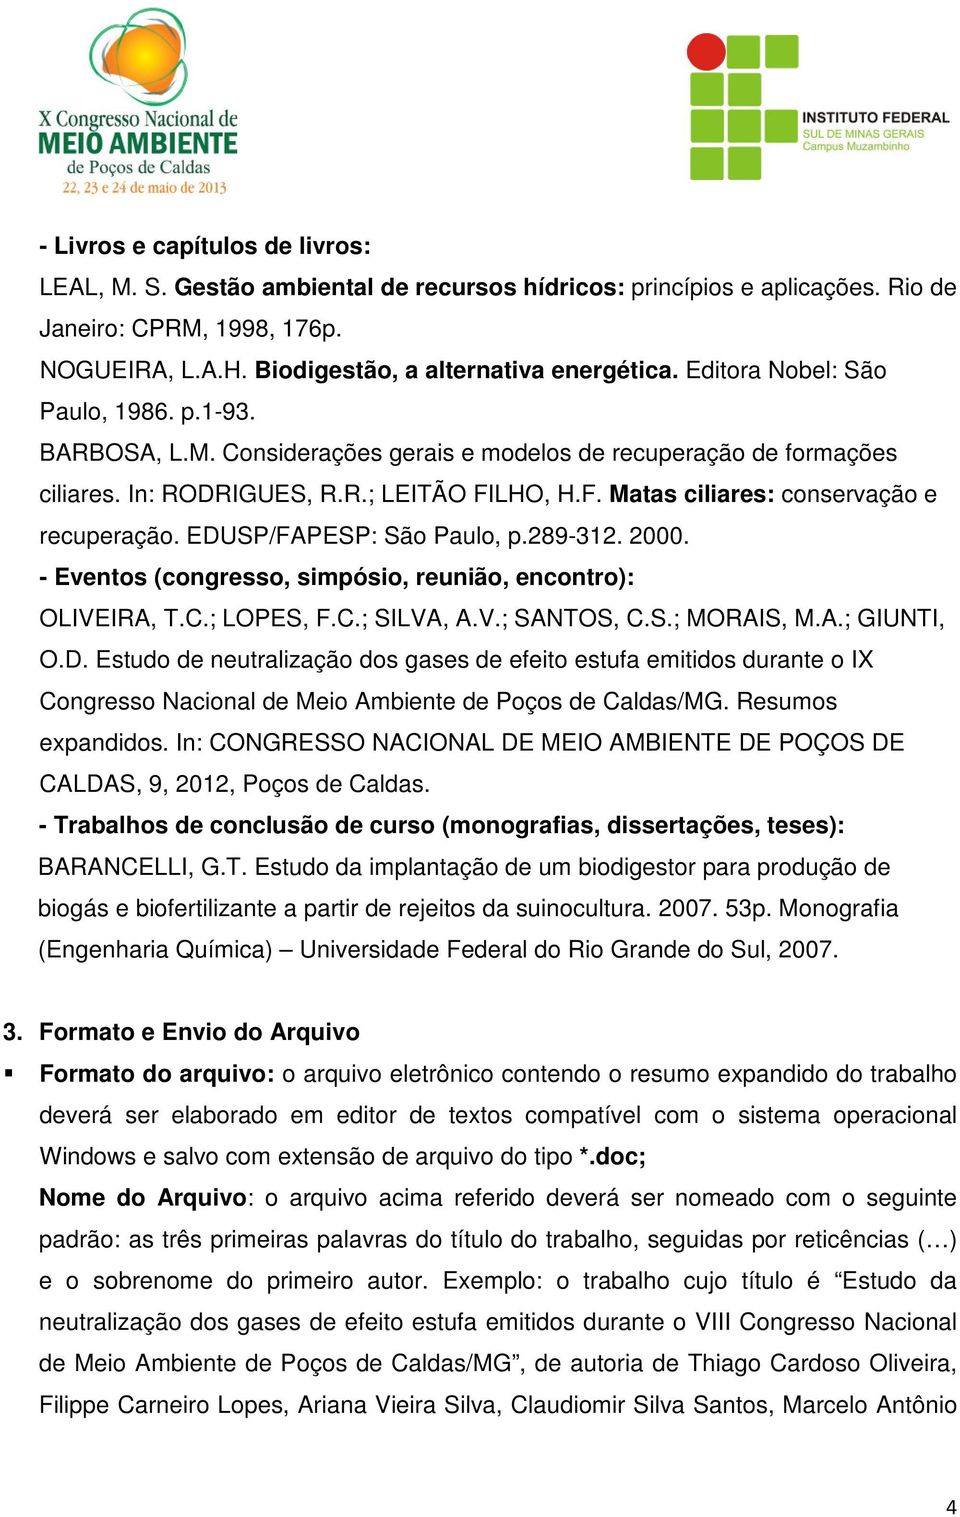 EDUSP/FAPESP: São Paulo, p.289-312. 2000. - Eventos (congresso, simpósio, reunião, encontro): OLIVEIRA, T.C.; LOPES, F.C.; SILVA, A.V.; SANTOS, C.S.; MORAIS, M.A.; GIUNTI, O.D. Estudo de neutralização dos gases de efeito estufa emitidos durante o IX Congresso Nacional de Meio Ambiente de Poços de Caldas/MG.